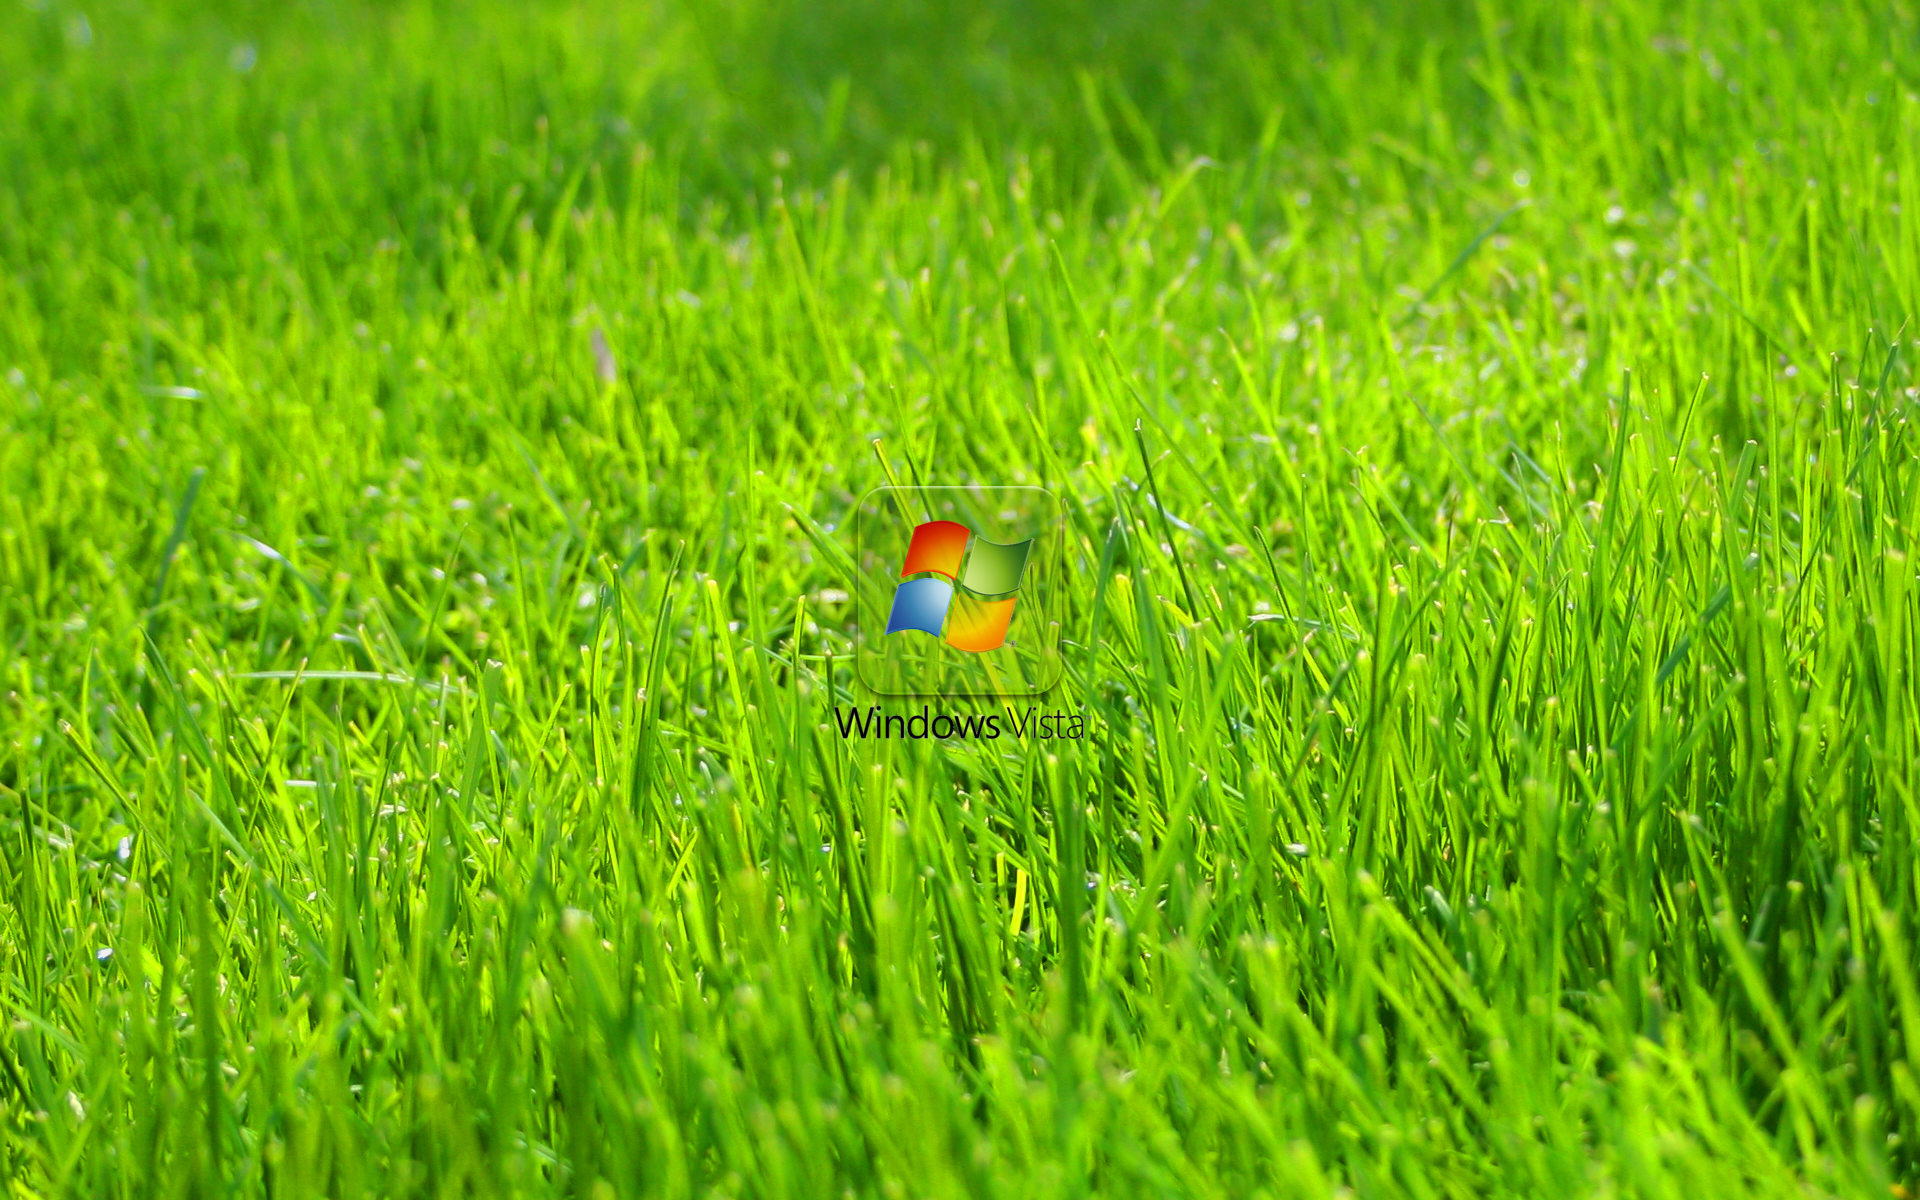 Green Grass Wallpaper Windows Vista Resolution High